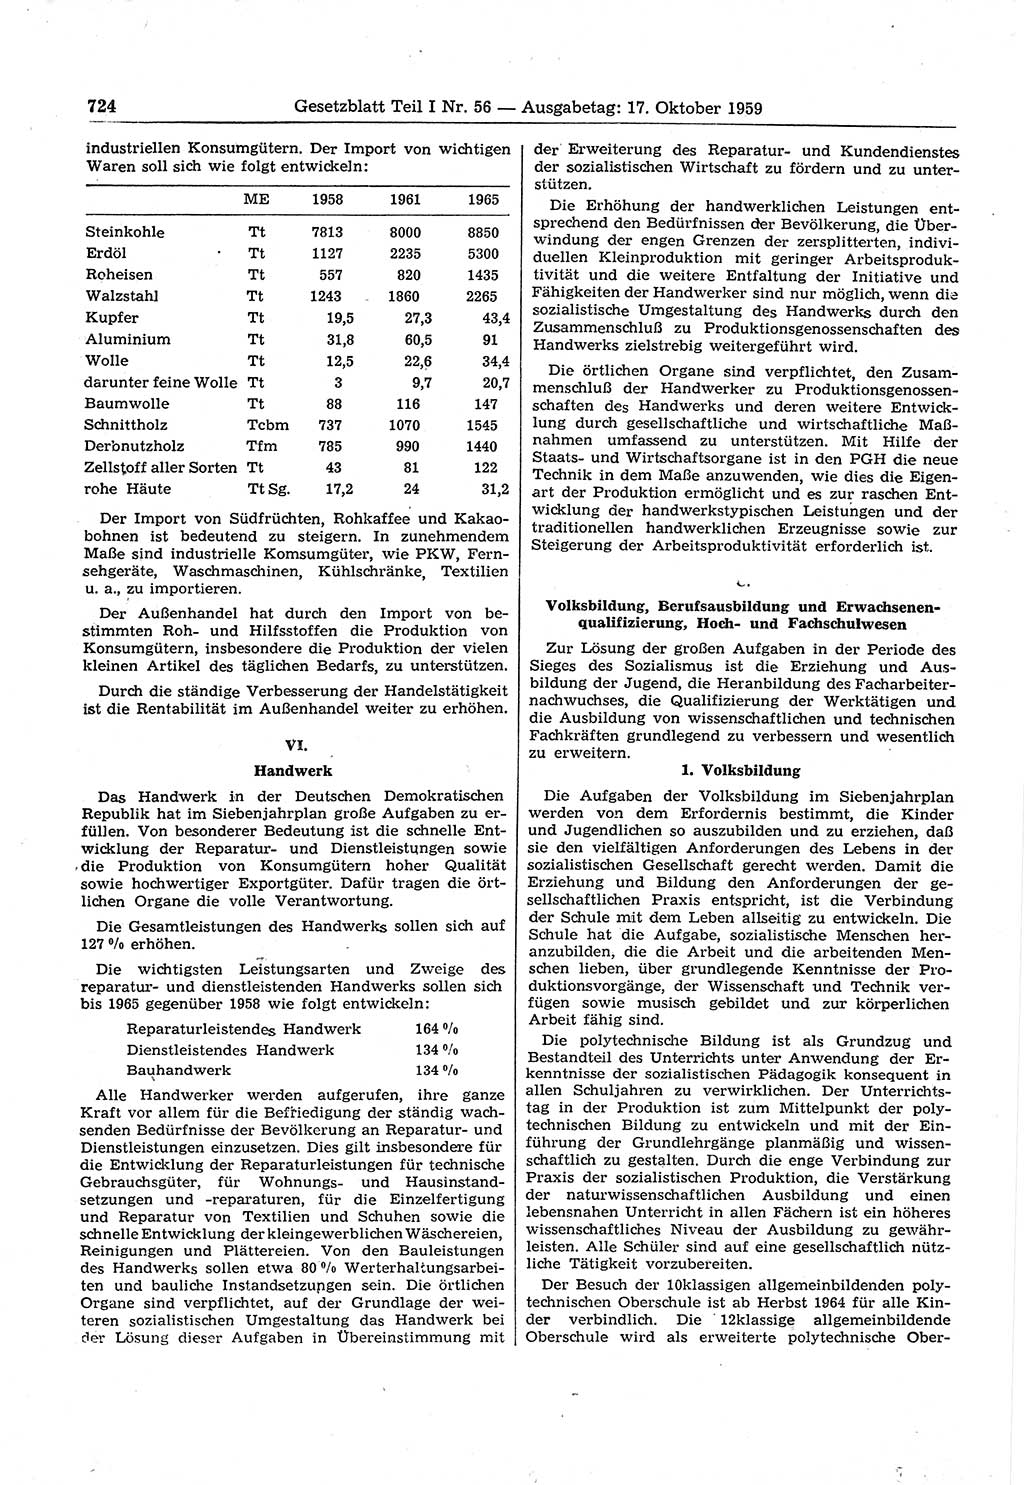 Gesetzblatt (GBl.) der Deutschen Demokratischen Republik (DDR) Teil Ⅰ 1959, Seite 724 (GBl. DDR Ⅰ 1959, S. 724)